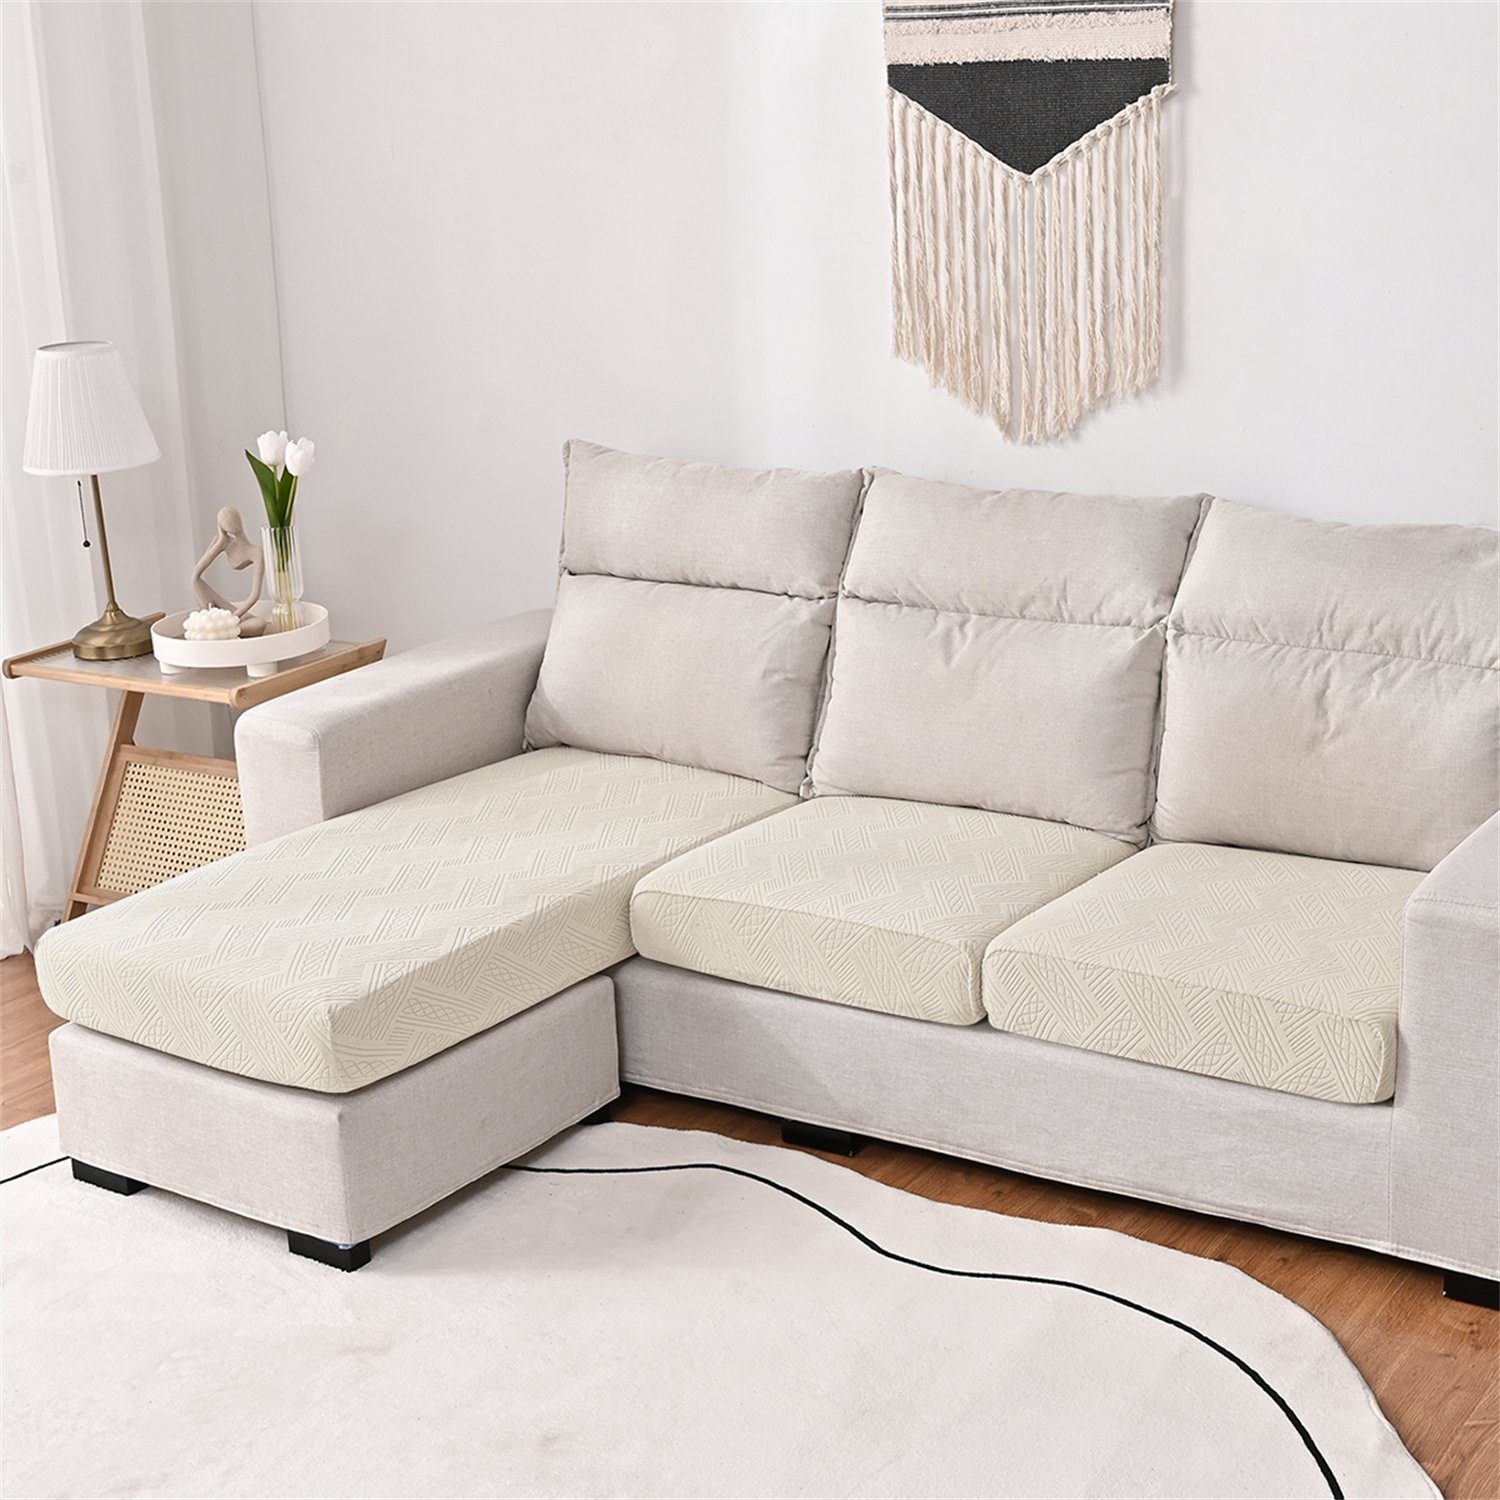 Sofahusse, HOMEIDEAS, Sofa Bezüge Couch Kissenbezüge für 1,2,3,4 Sitze Beige-Geometrie